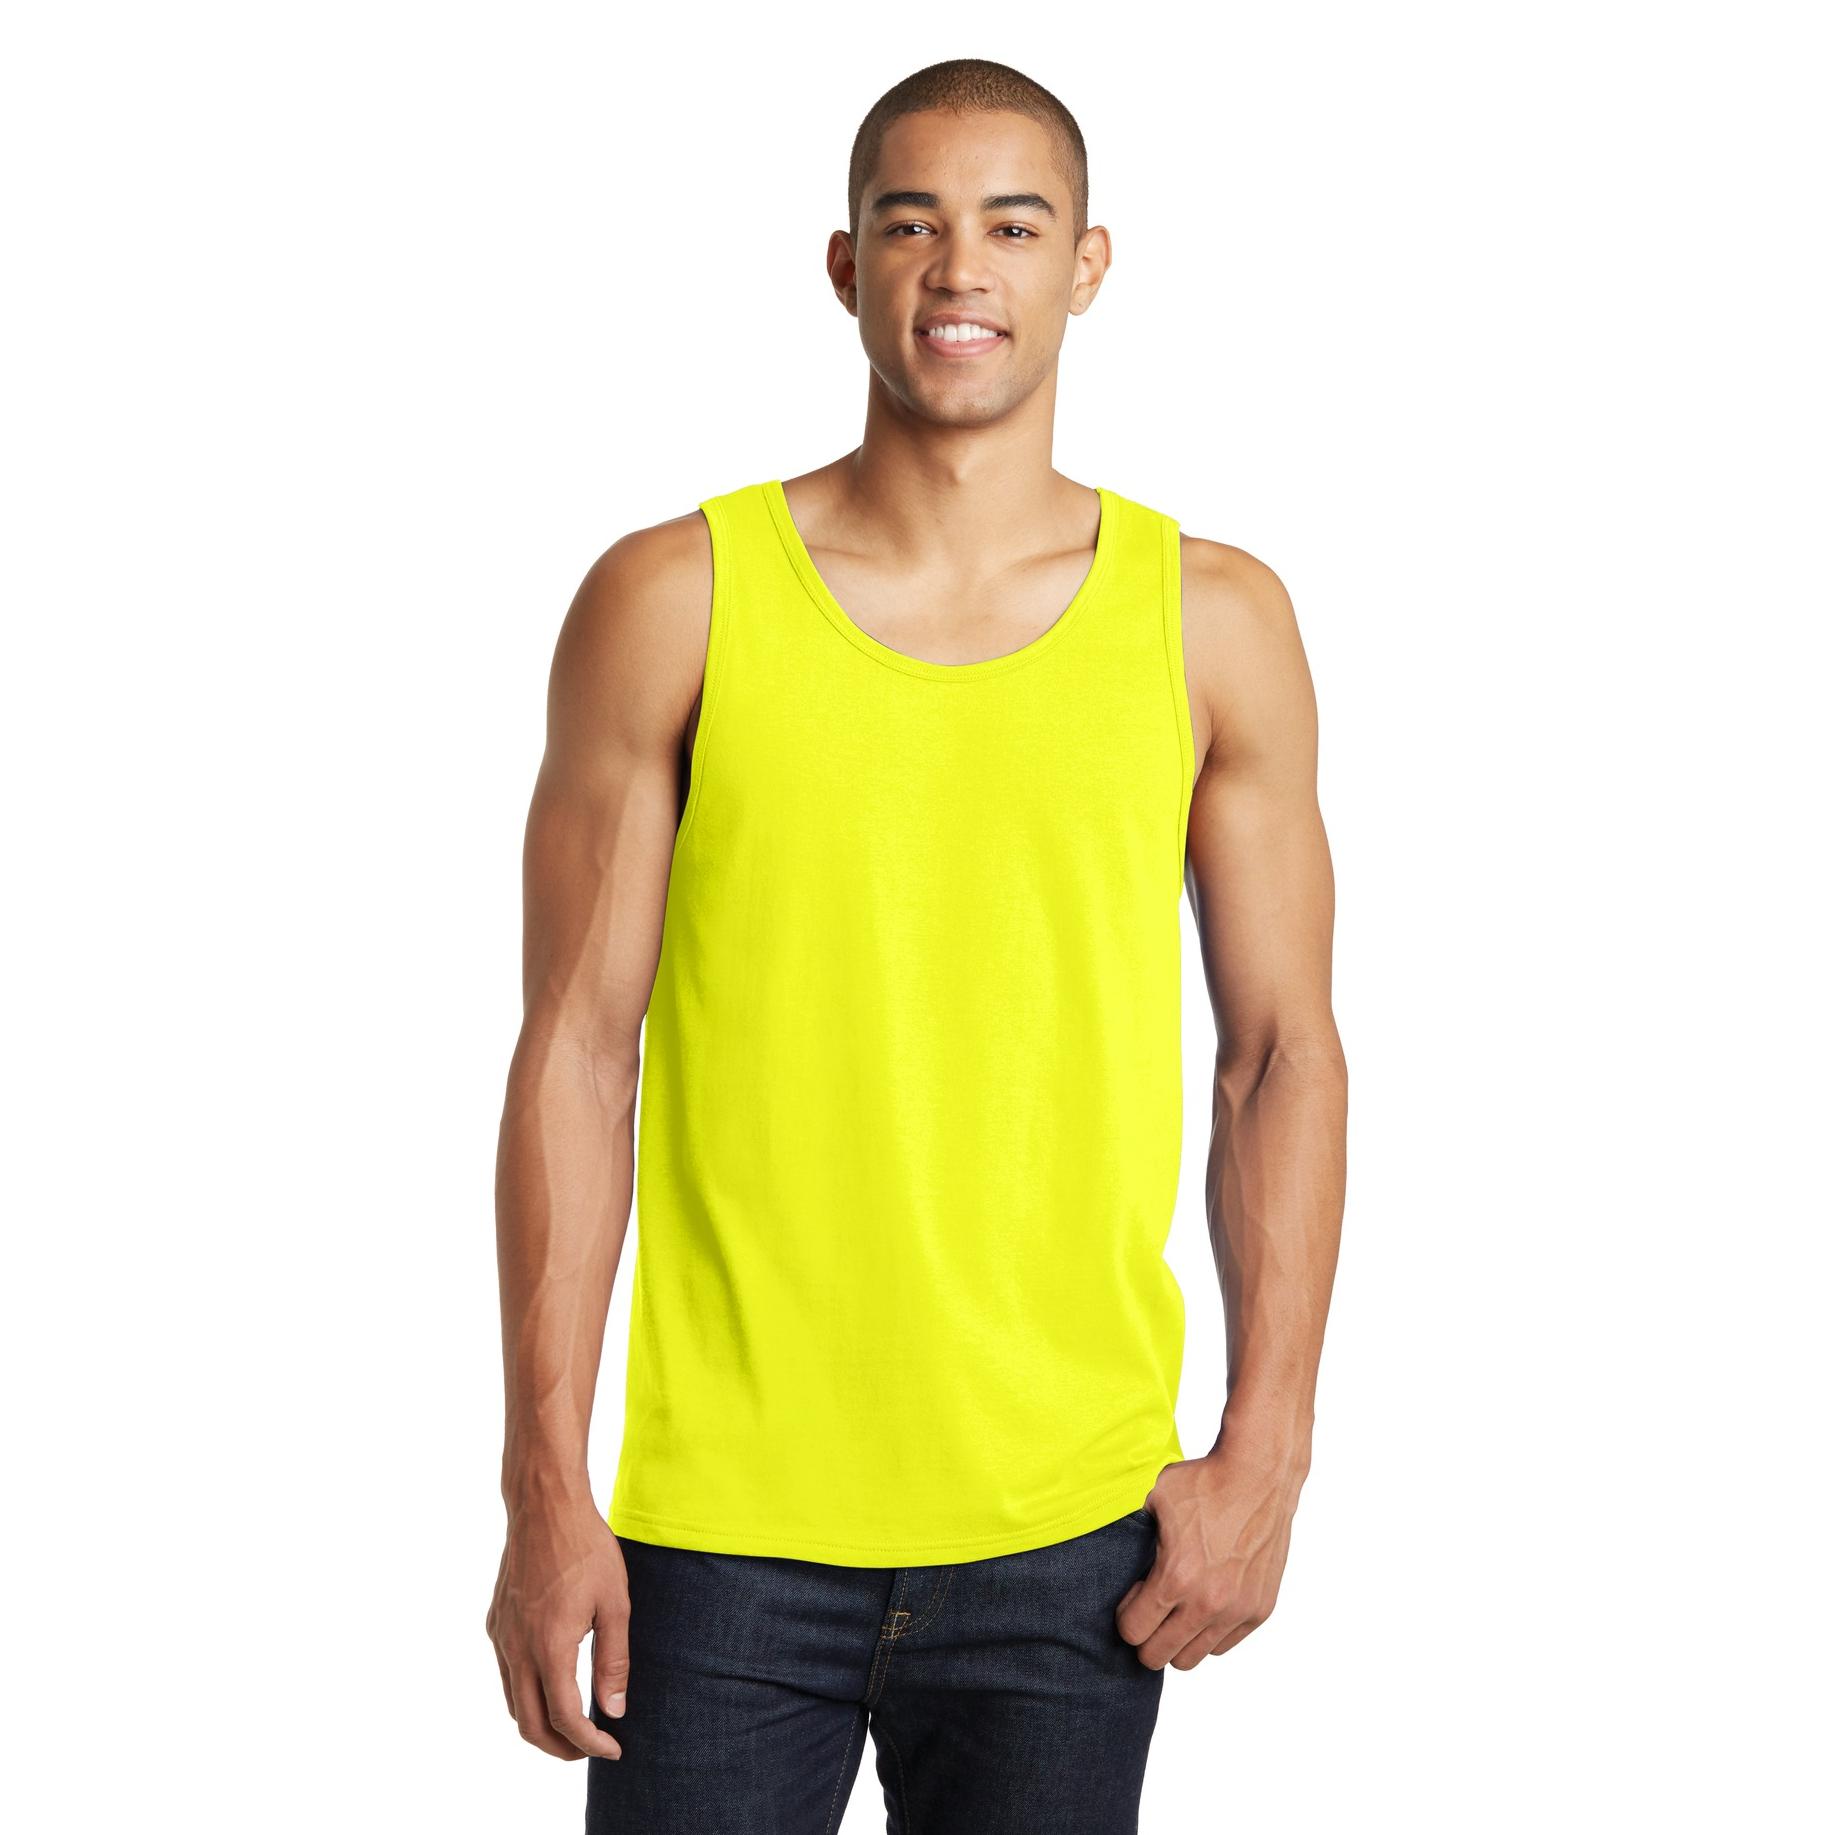 neon yellow sleeveless shirt